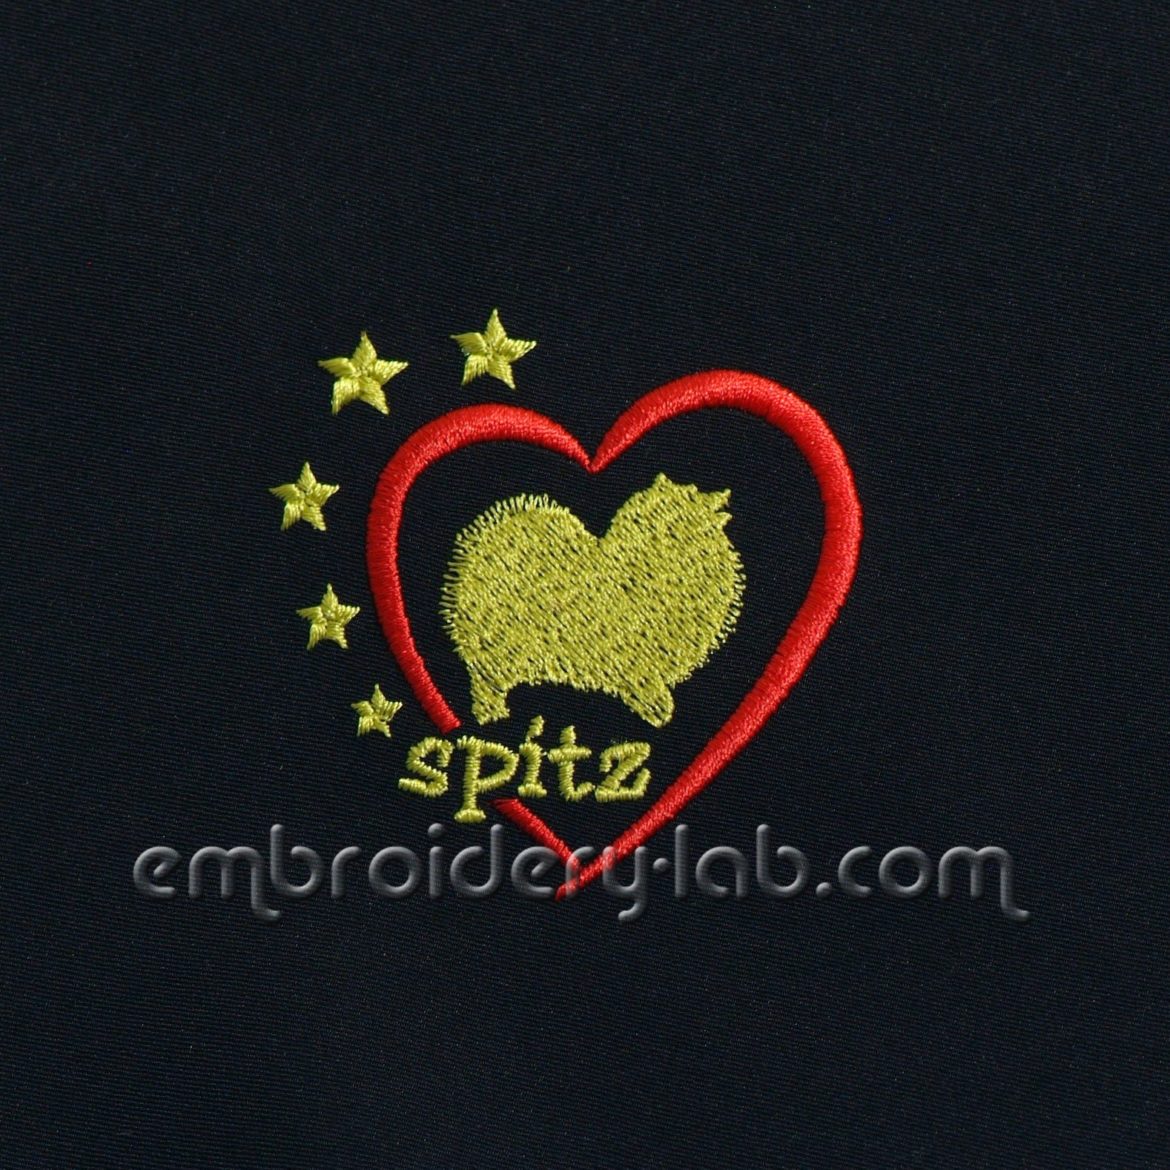 'Spitz' Emblem 0002